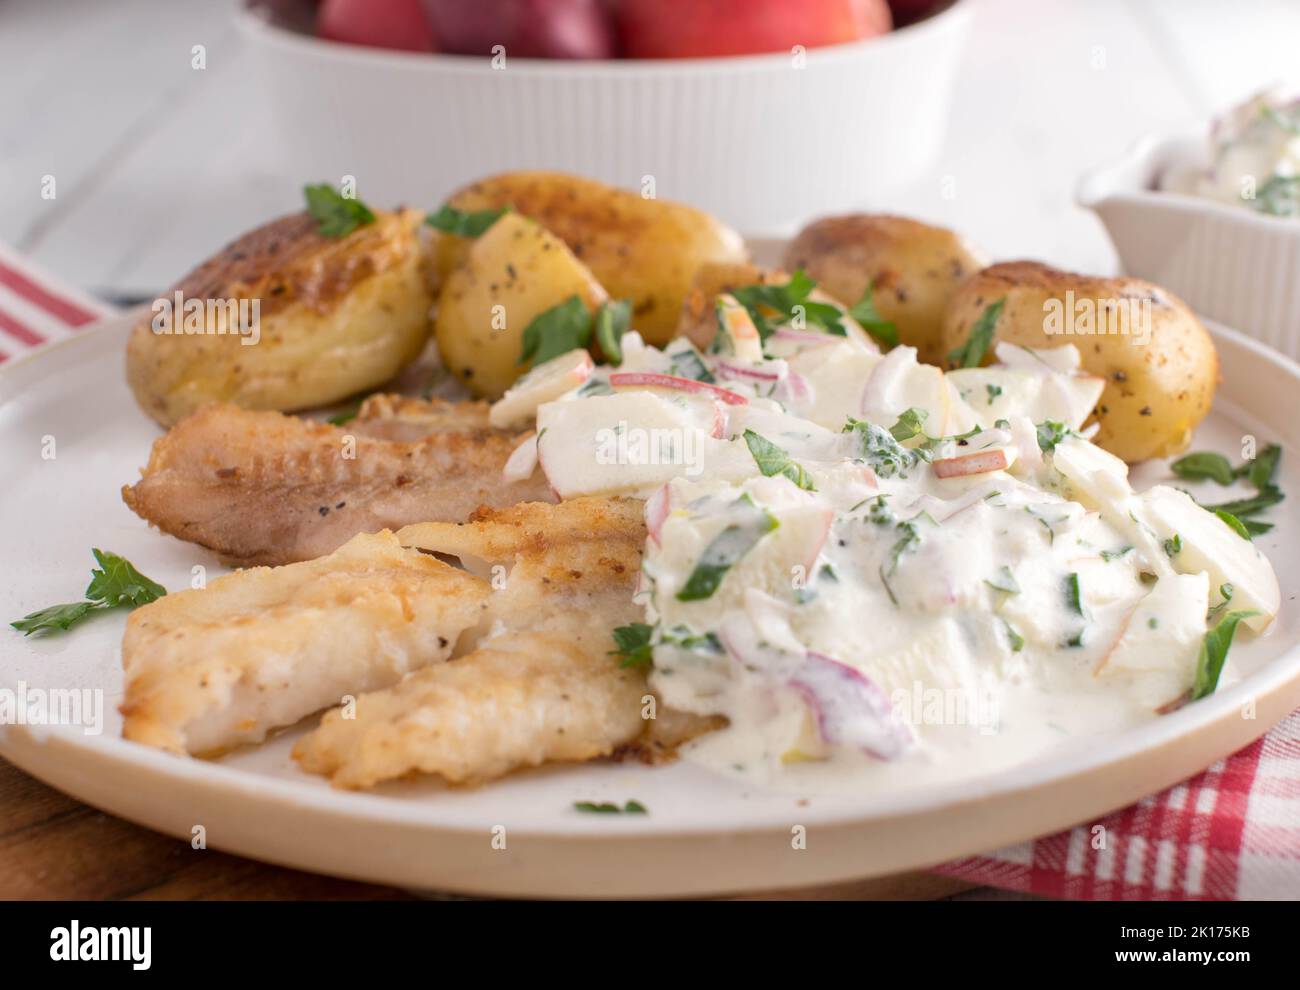 Leichtes Fischgericht mit gebratenem Rotbarsch-Filet. Serviert mit gerösteten Mantelkartoffeln und einer köstlichen sauren Rahmsoße mit Kräutern und Äpfeln auf einem Teller Stockfoto